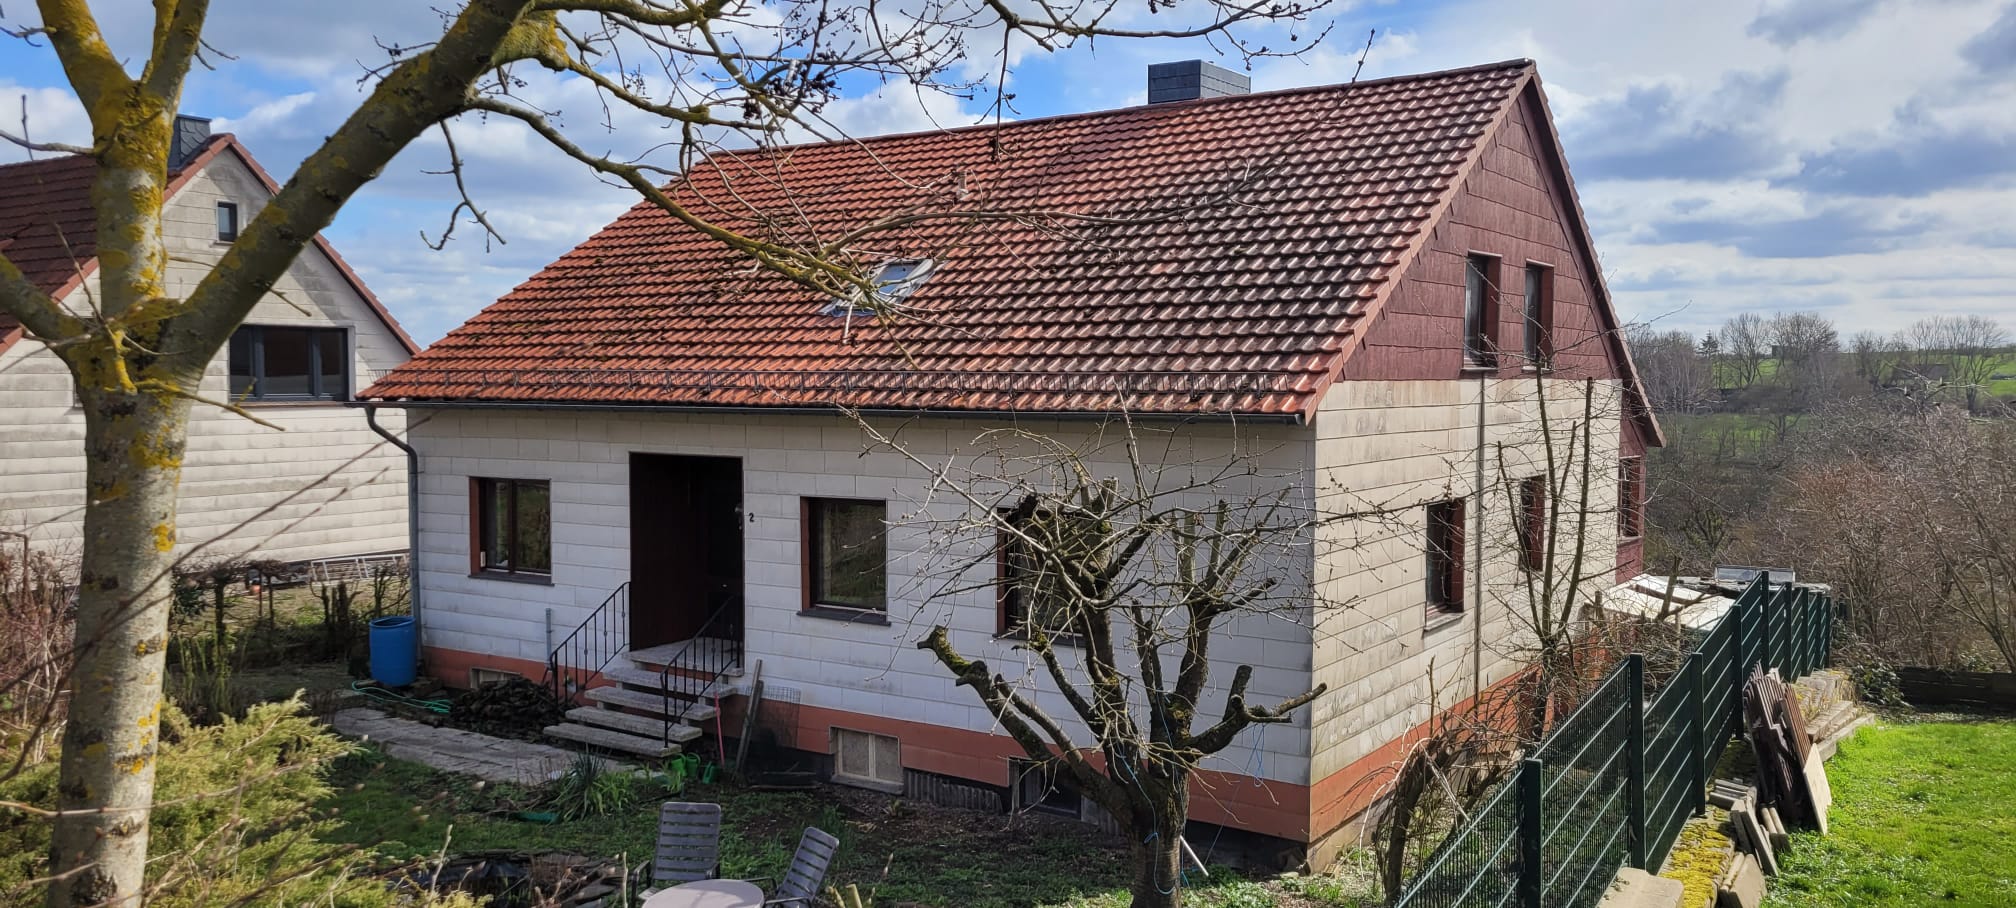 Familienfreundliches Einfamilienhaus in 37124 Rosdorf OT Settmarshausen!